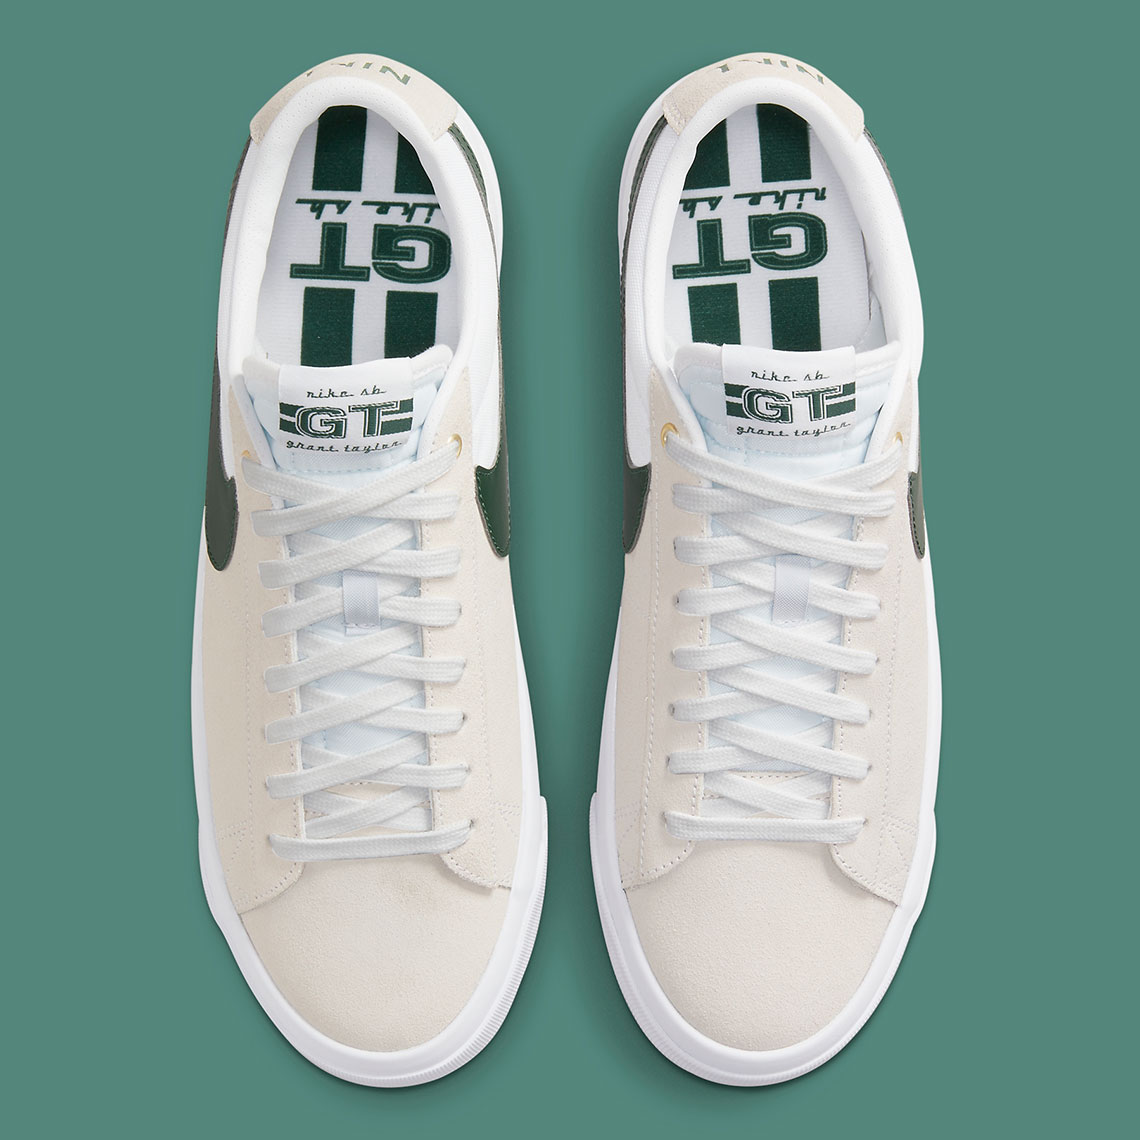 Nike Sb Blazer Low Gt White Green Dc7695 102 Sneakernews Com